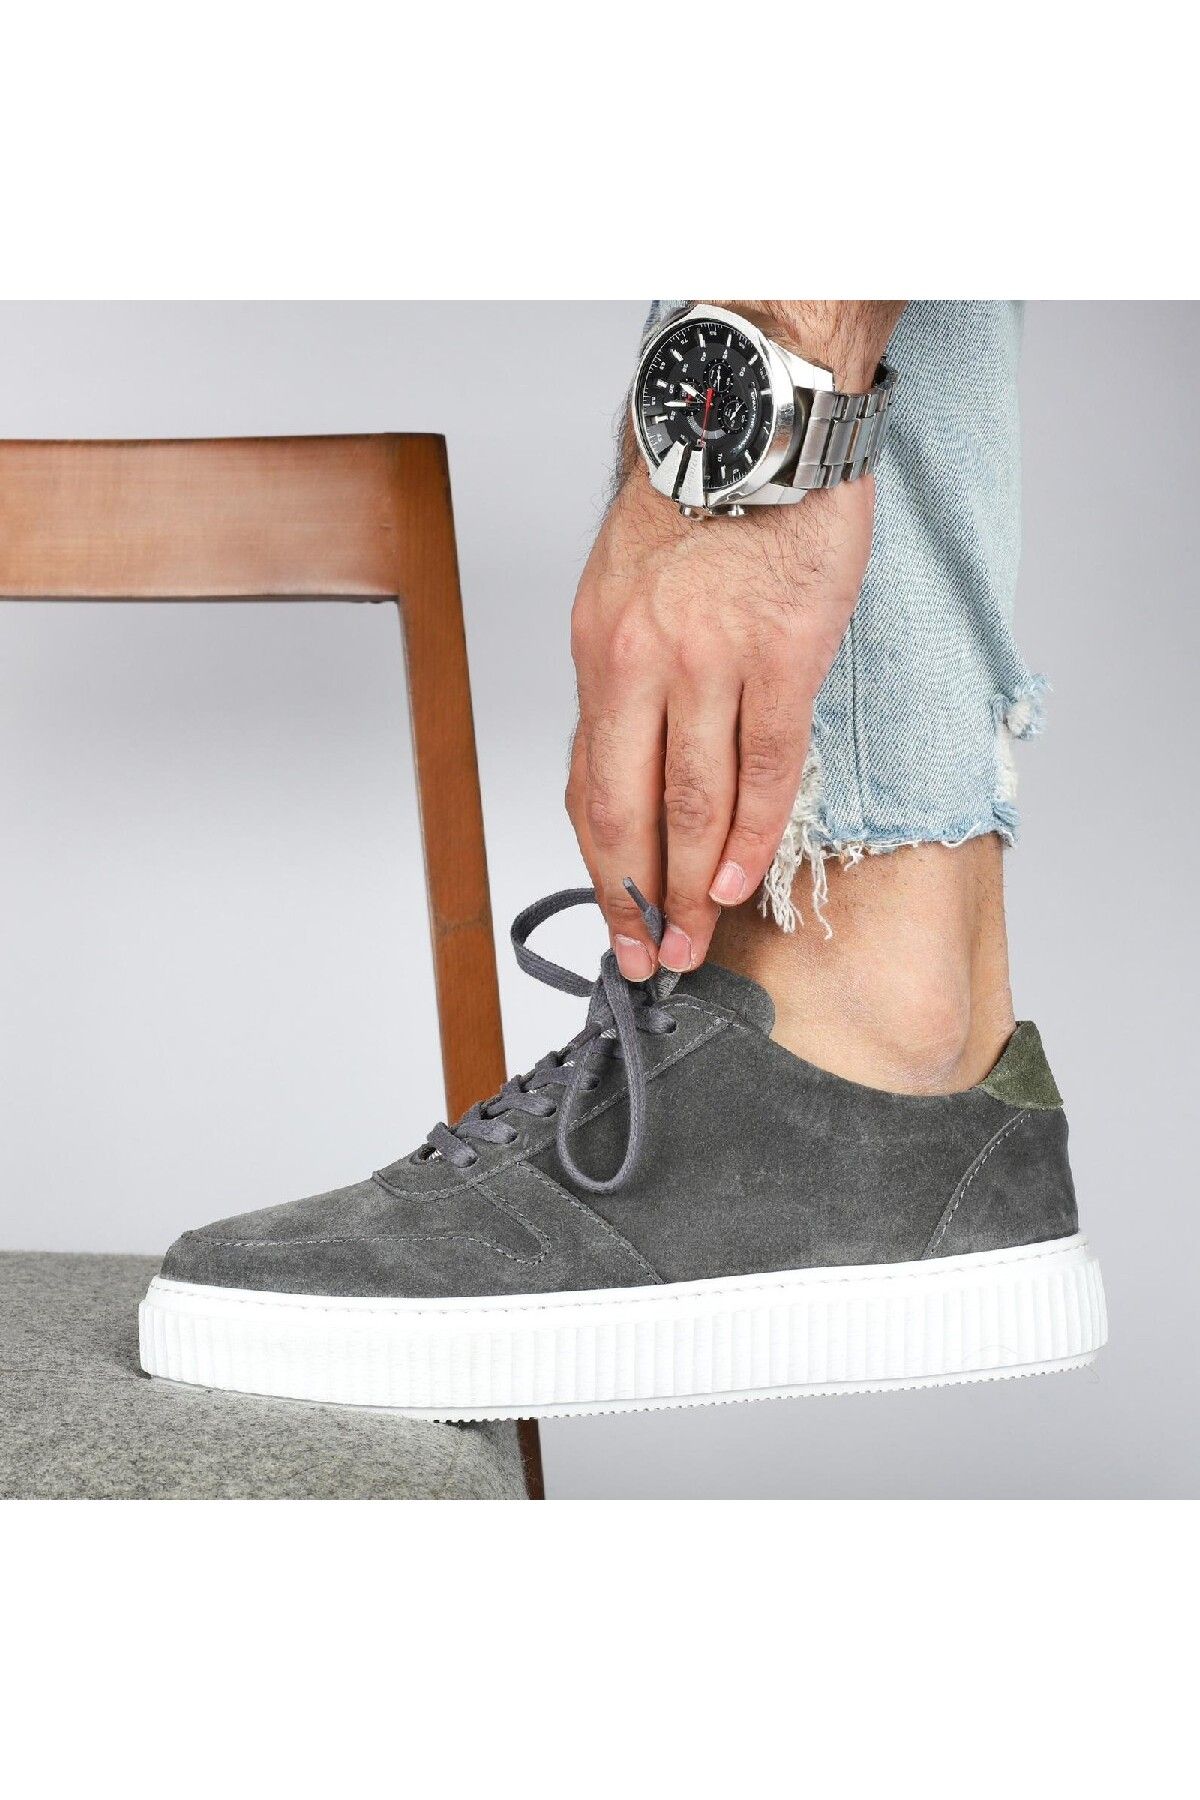 Tetri Espalion Model Hakiki Deri Erkek Casual Ayakkabı - Erkek Günlük Deri Ayakkabı